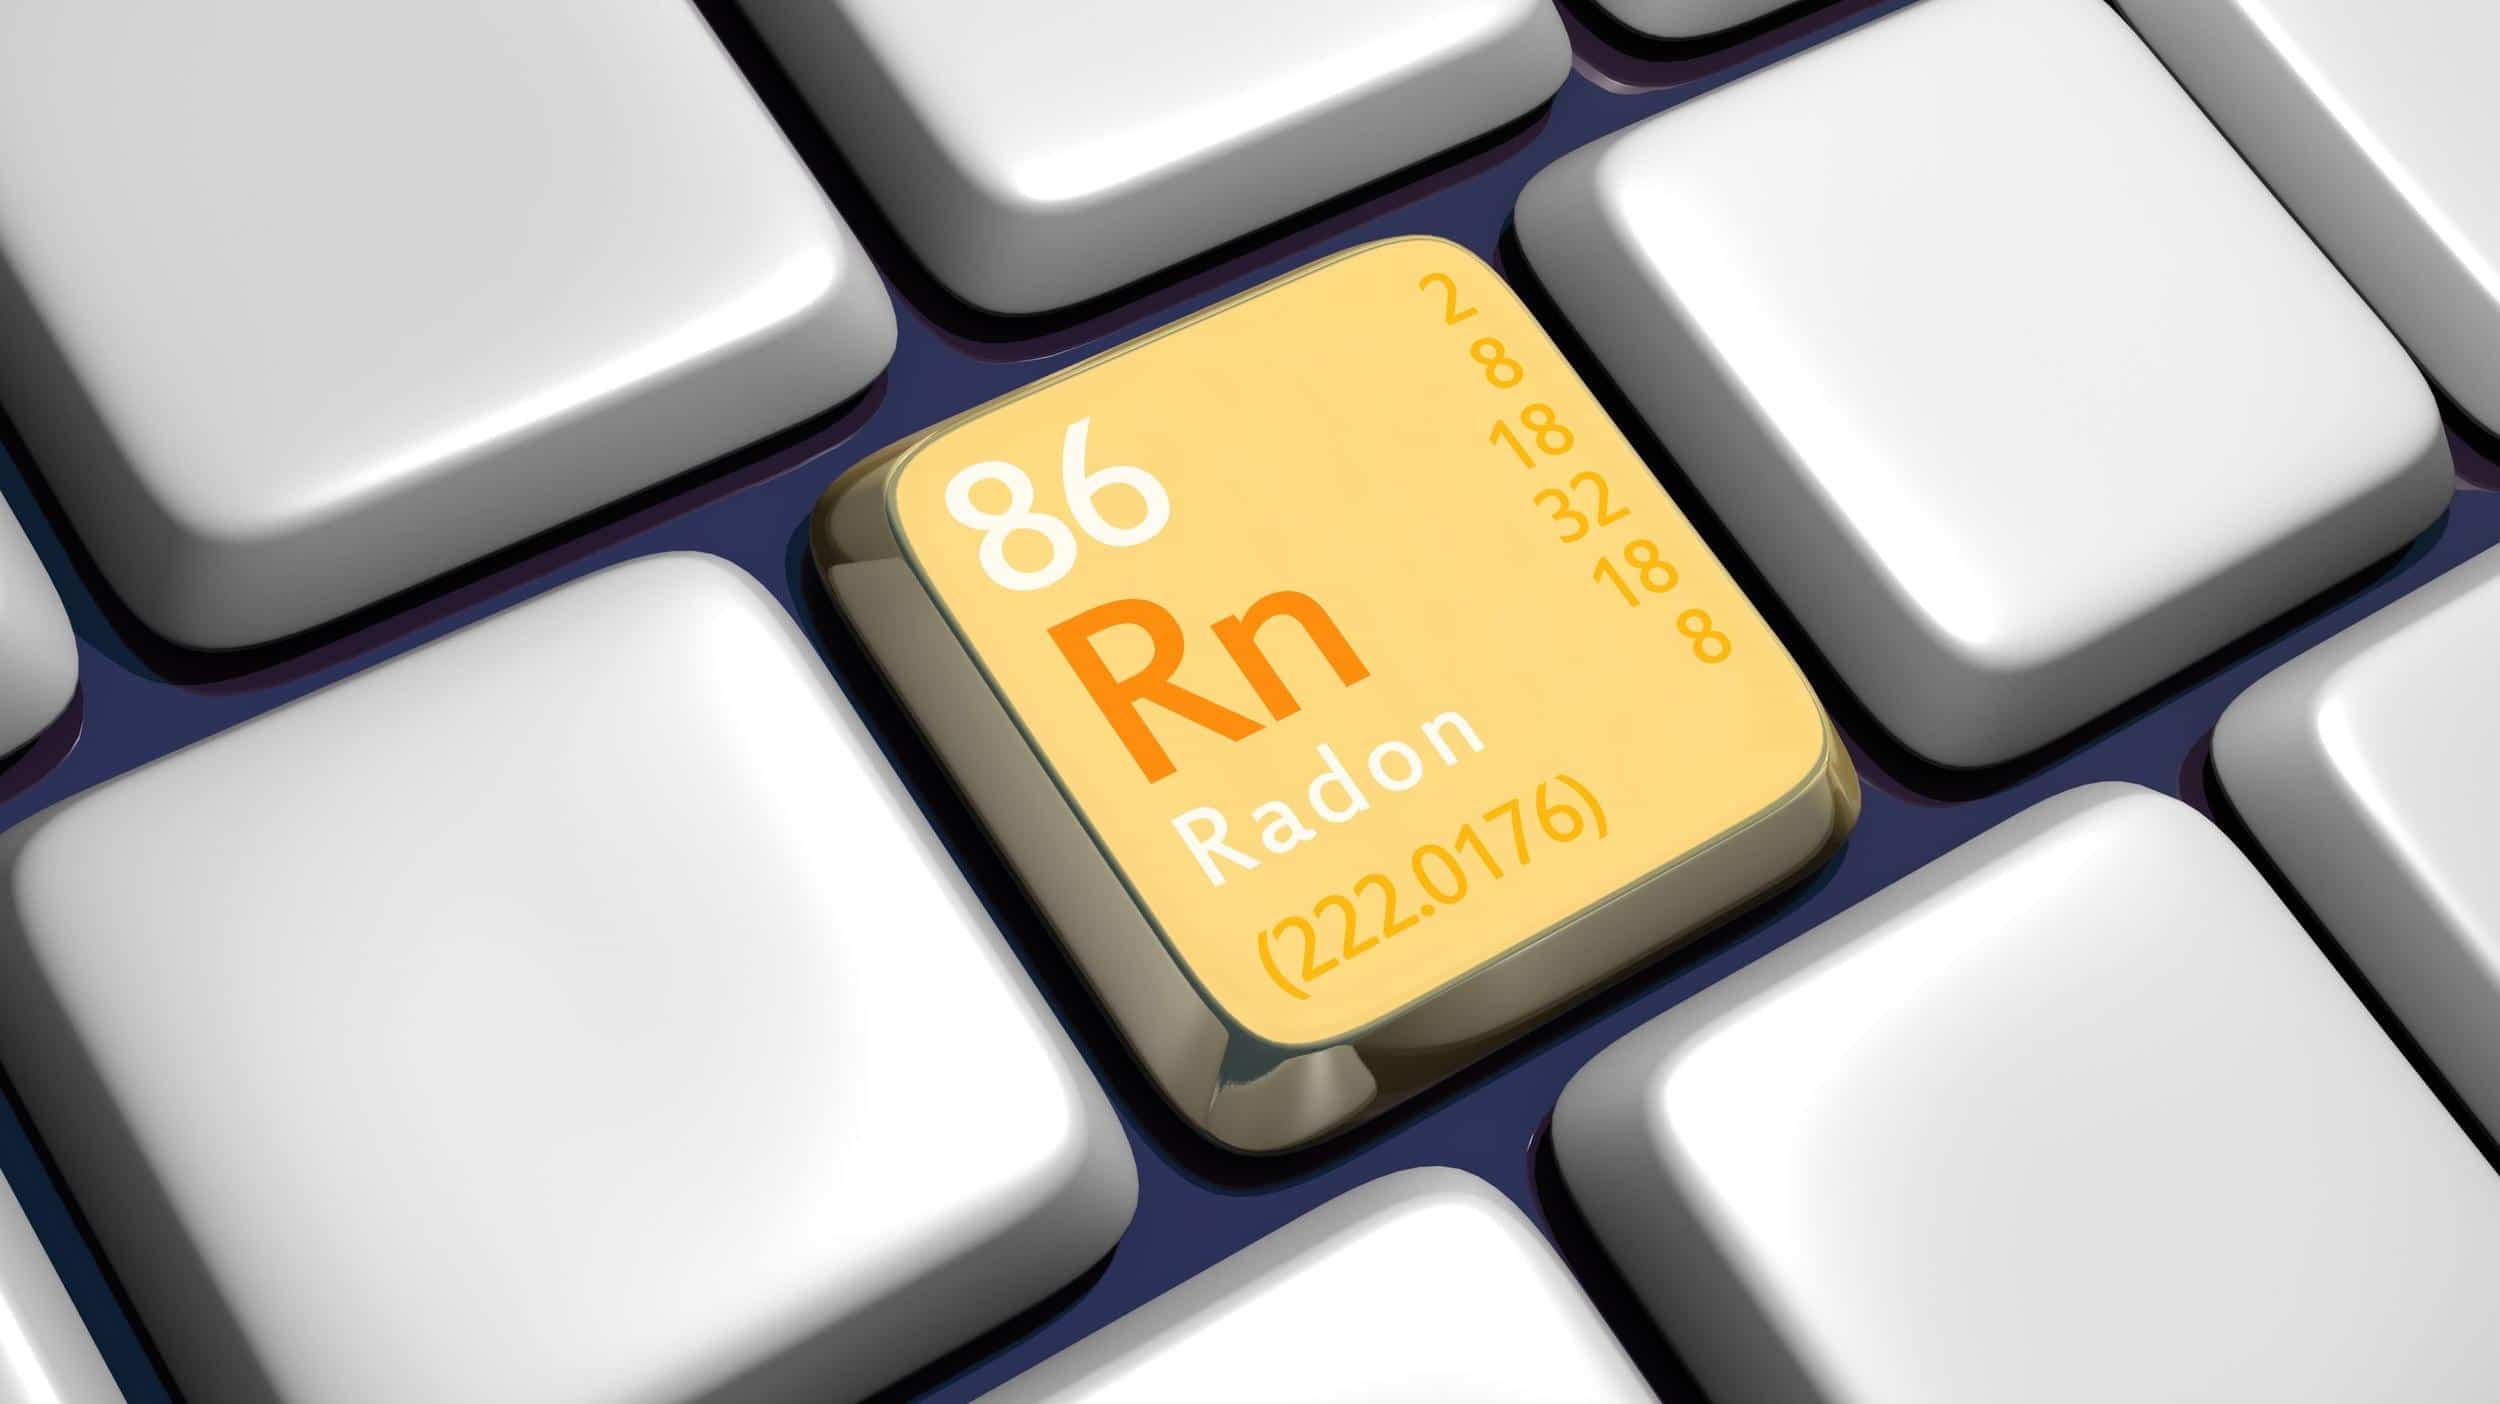 Hattusas SRL - radon - gas radon - misurazione radon - interventi radon - bonifica radon